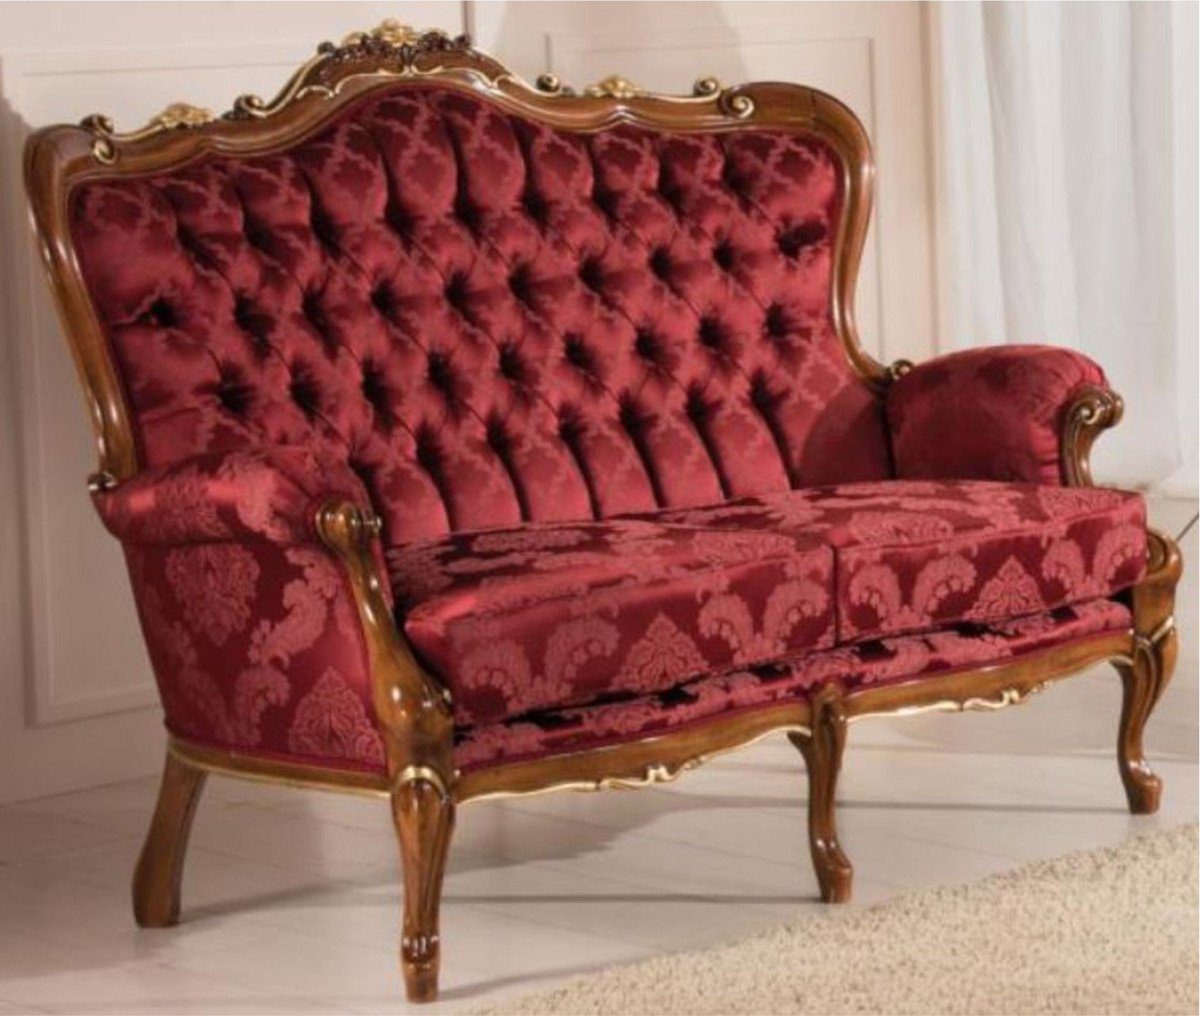 Casa Padrino Sofa Luxus Barock Wohnzimmer Sofa mit elegantem Muster Bordeauxrot / Braun / Gold 144 x 90 x H. 115 cm - Barockstil Wohnzimmer Möbel - Edel & Prunkvoll